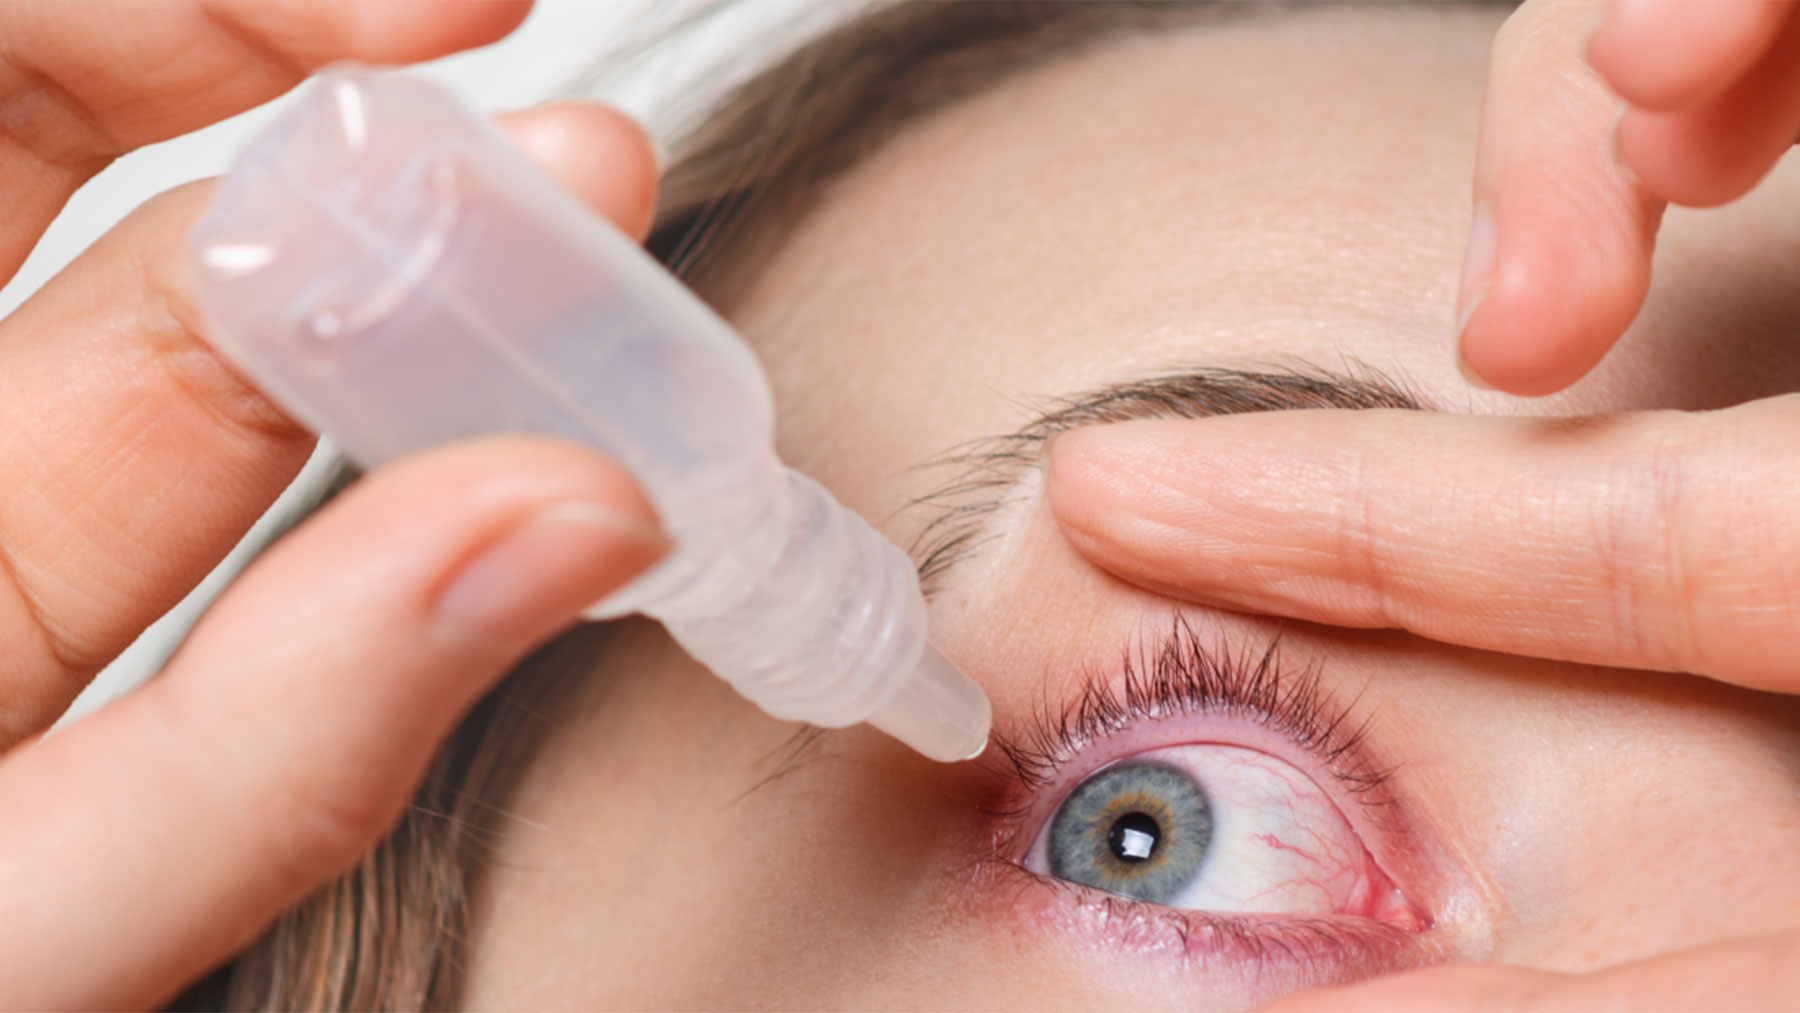 Estas recomendaciones son aún más importantes ante pacientes ya diagnosticados de enfermedades de la superficie ocular.